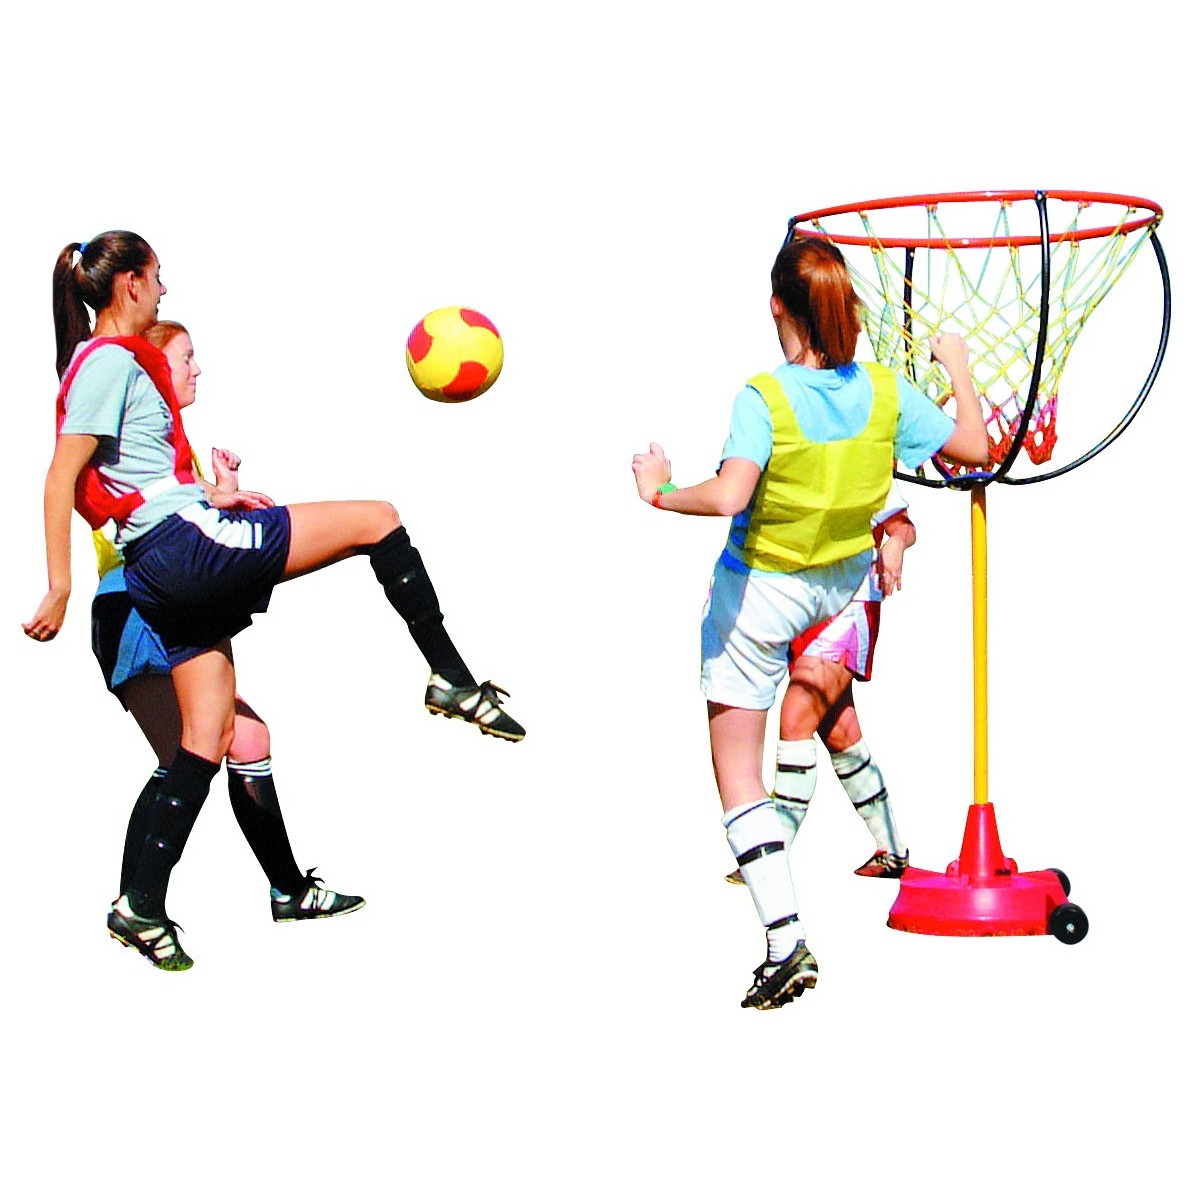 Panier géant polyvalent Spordas pour les jeux sportifs collectifs de basket et football des enfants